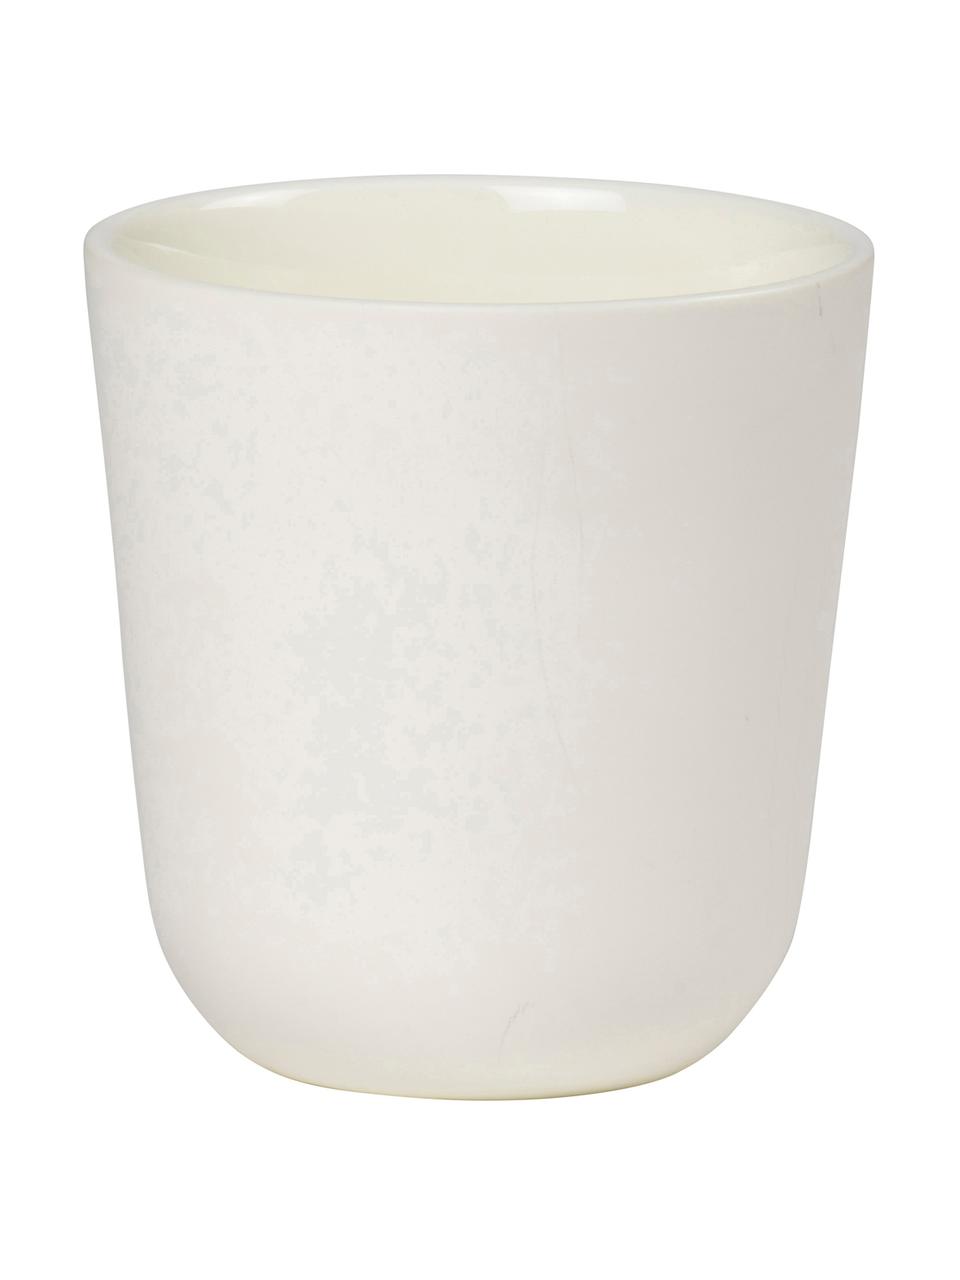 Becher Nudge in Weiß matt/glänzend, 4 Stück, Porzellan, Gebrochenes Weiß, Ø 9 x H 10 cm